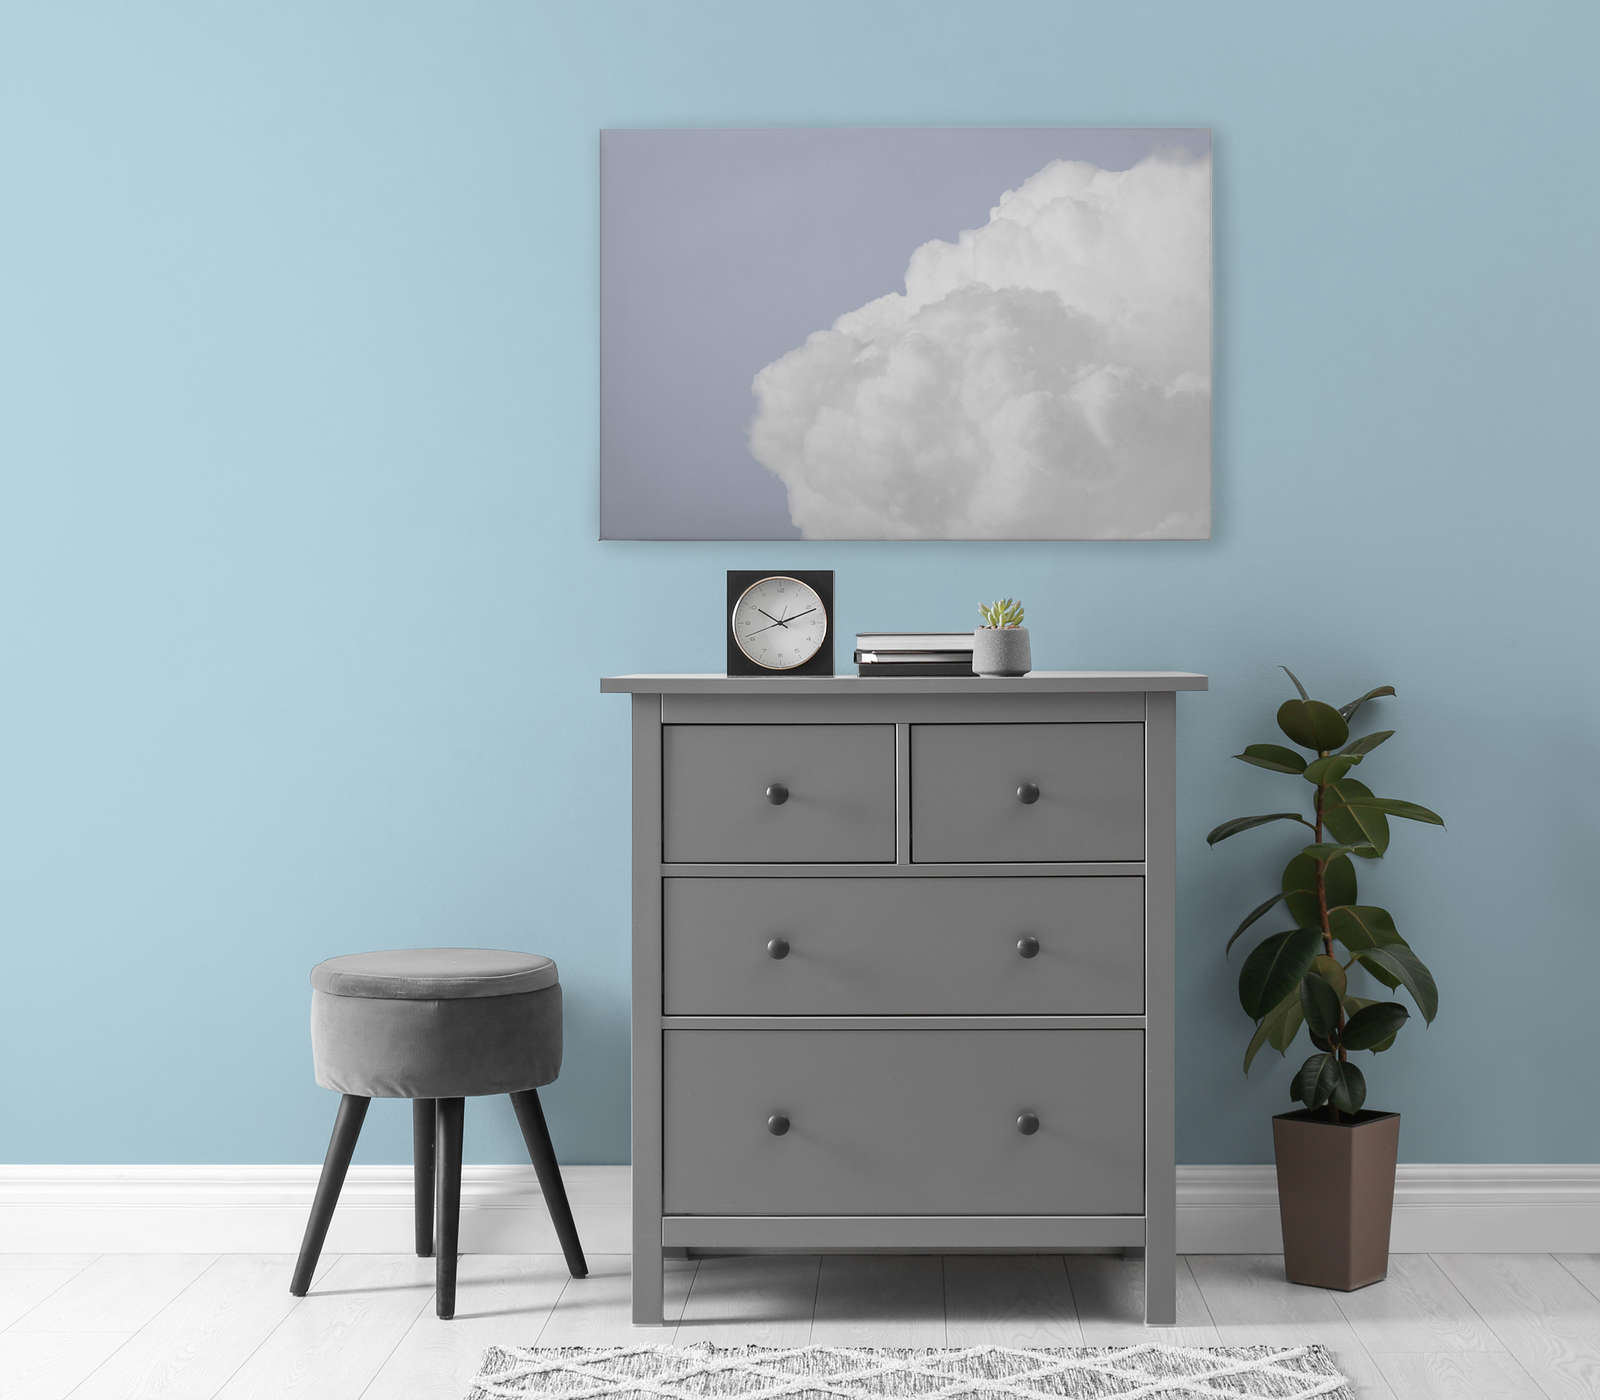             Canvas schilderij met witte wolken in een helderblauwe lucht - 0,90 m x 0,60 m
        